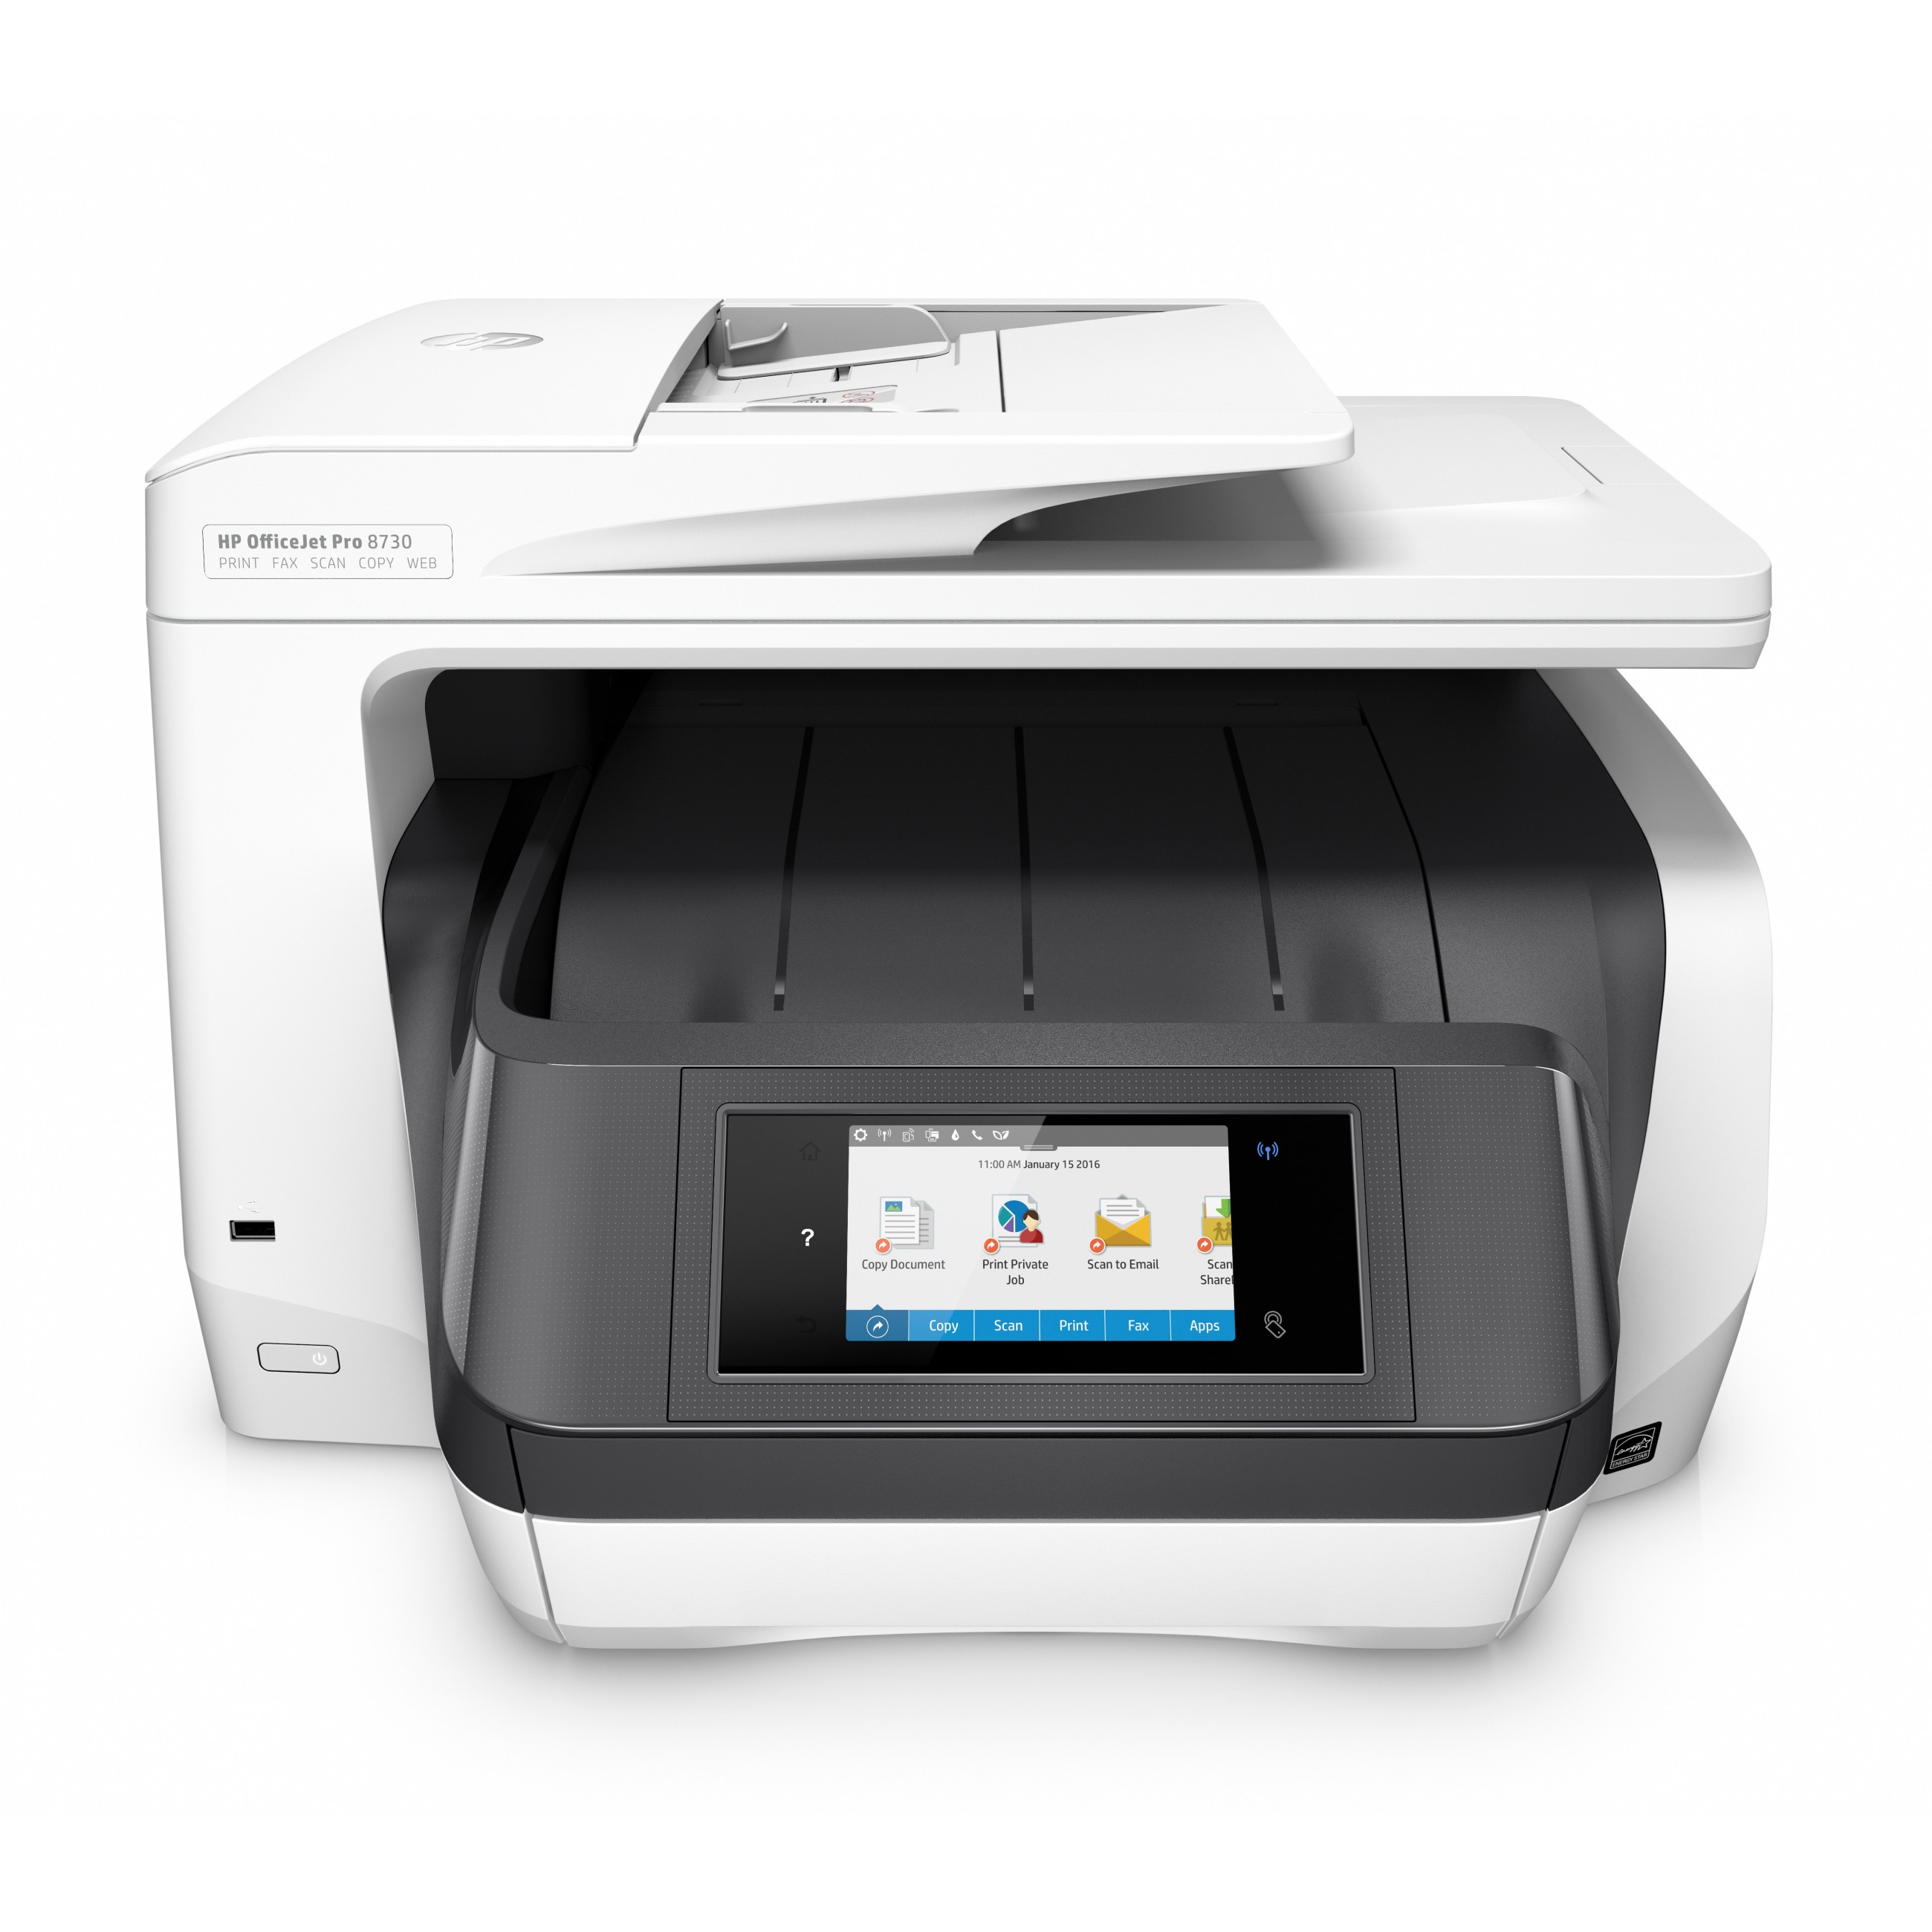 HP OfficeJet Pro 8730 All-in-One-Drucker Color Drucker für Home Drucken Kopieren Scannen Faxen Automatische Dokumentenzuführung (50 Blatt) USB-Druck über Vorderseite Scannen an E-Mail/PDF Beidseitiger